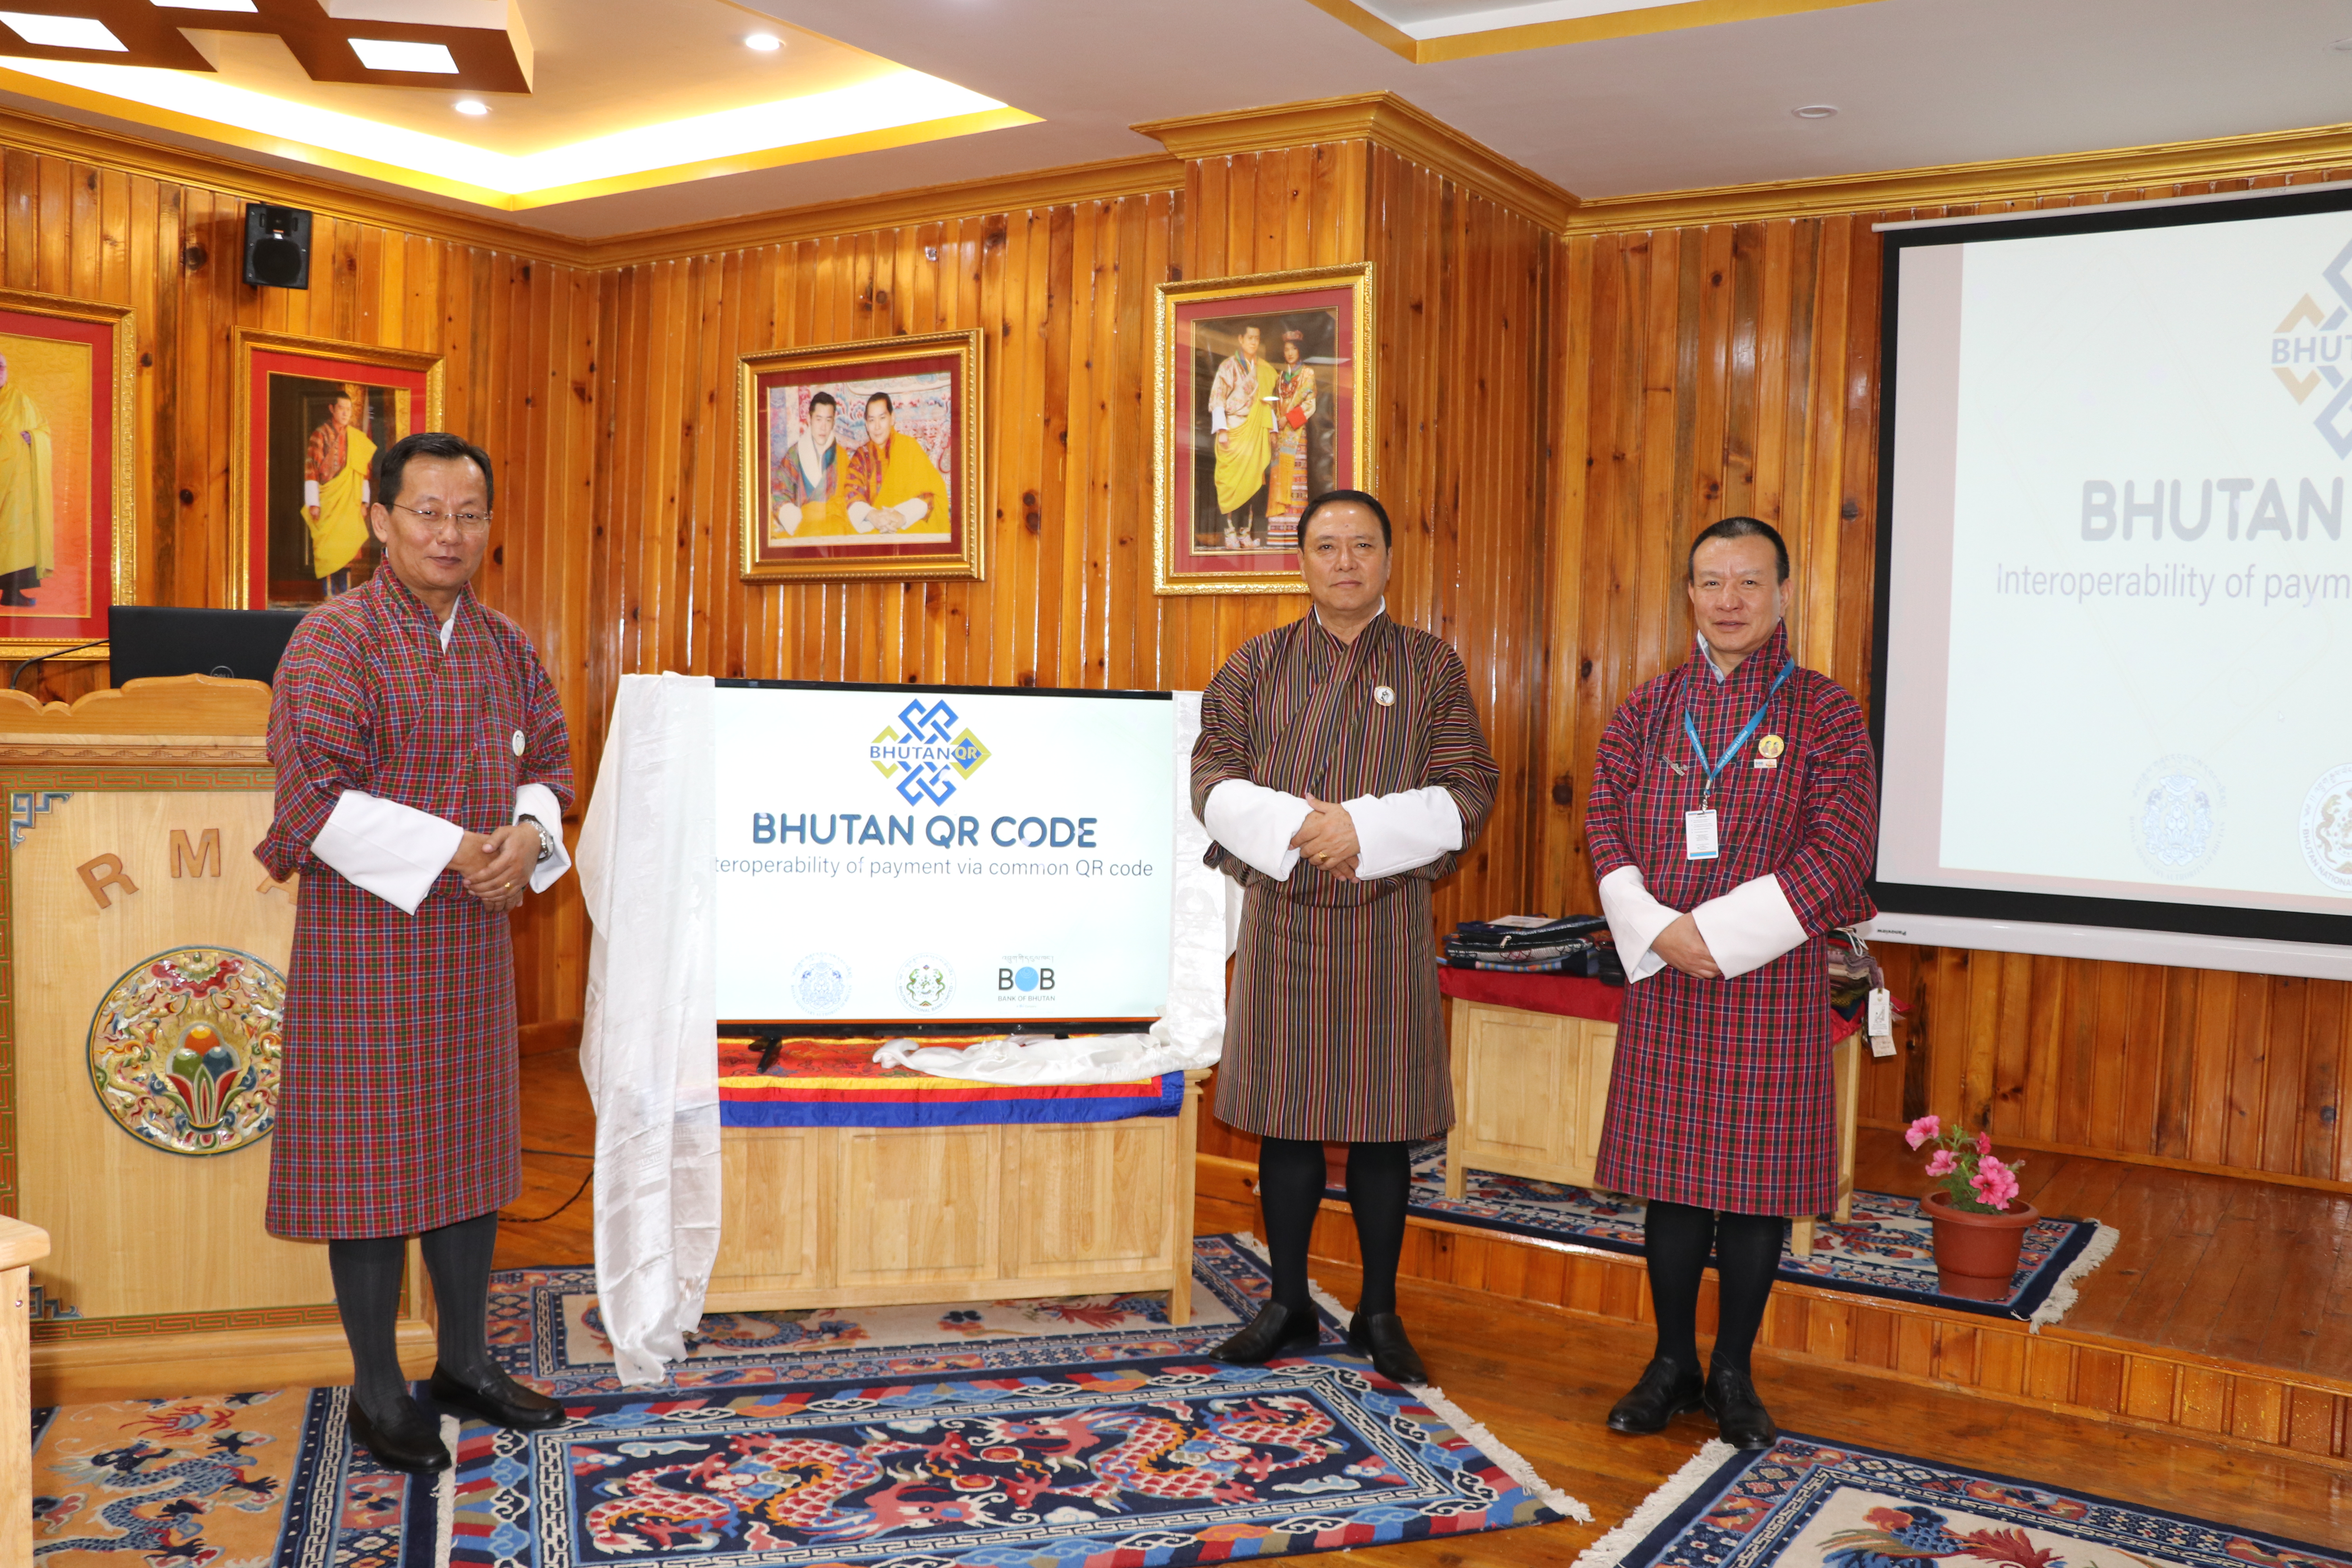 Launch of Bhutan QR Code